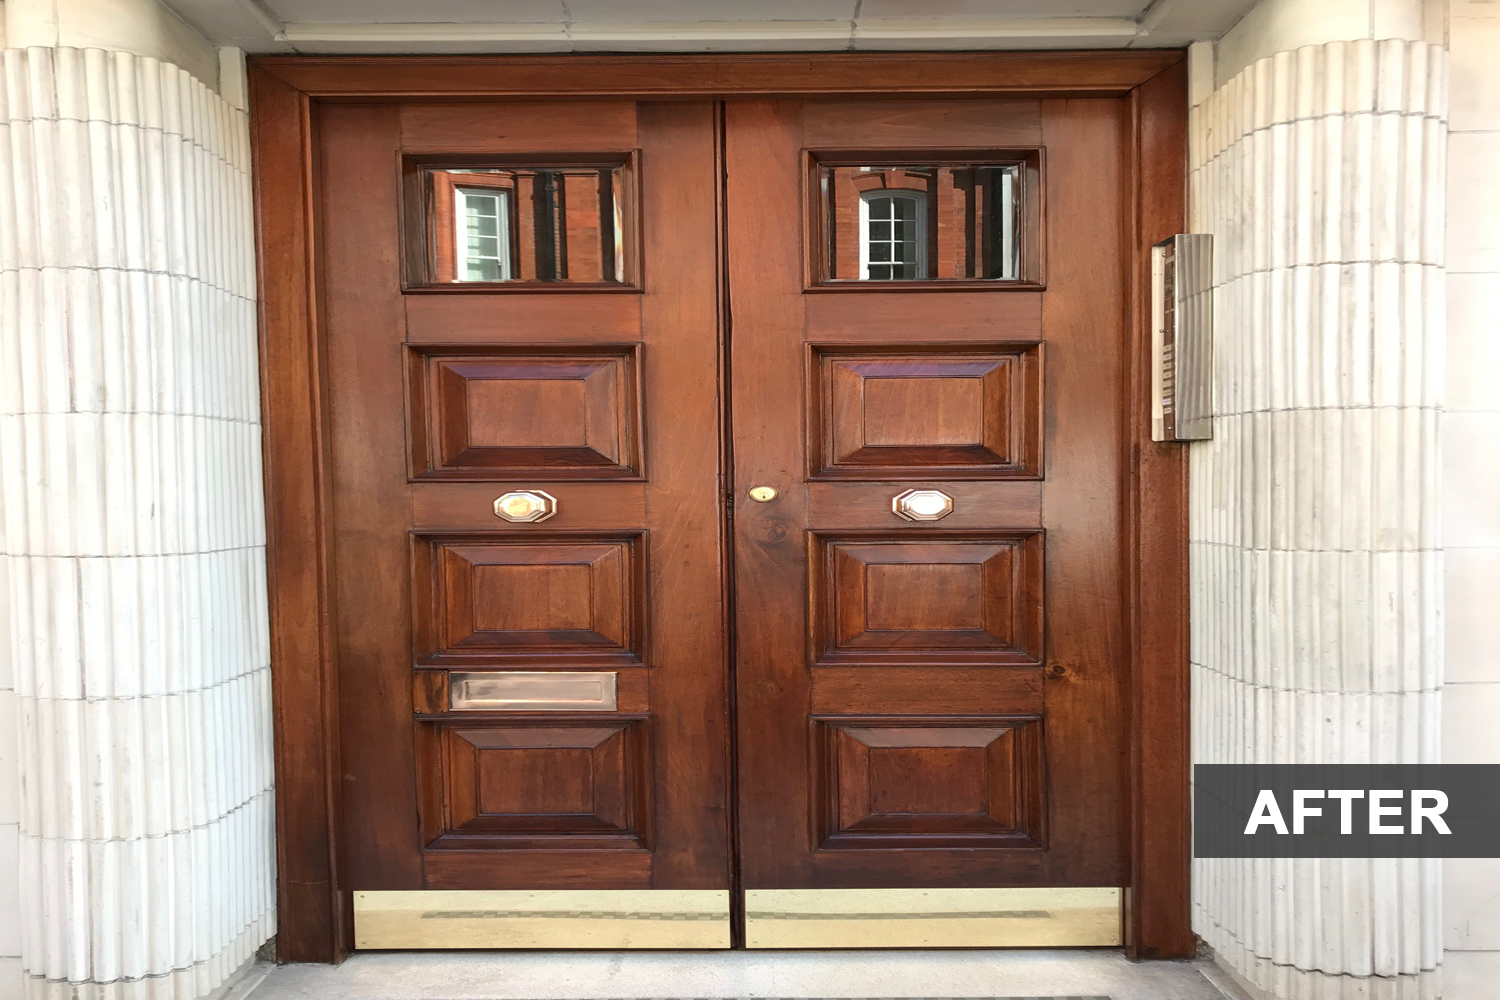 Wooden door with brass handles after restoration.